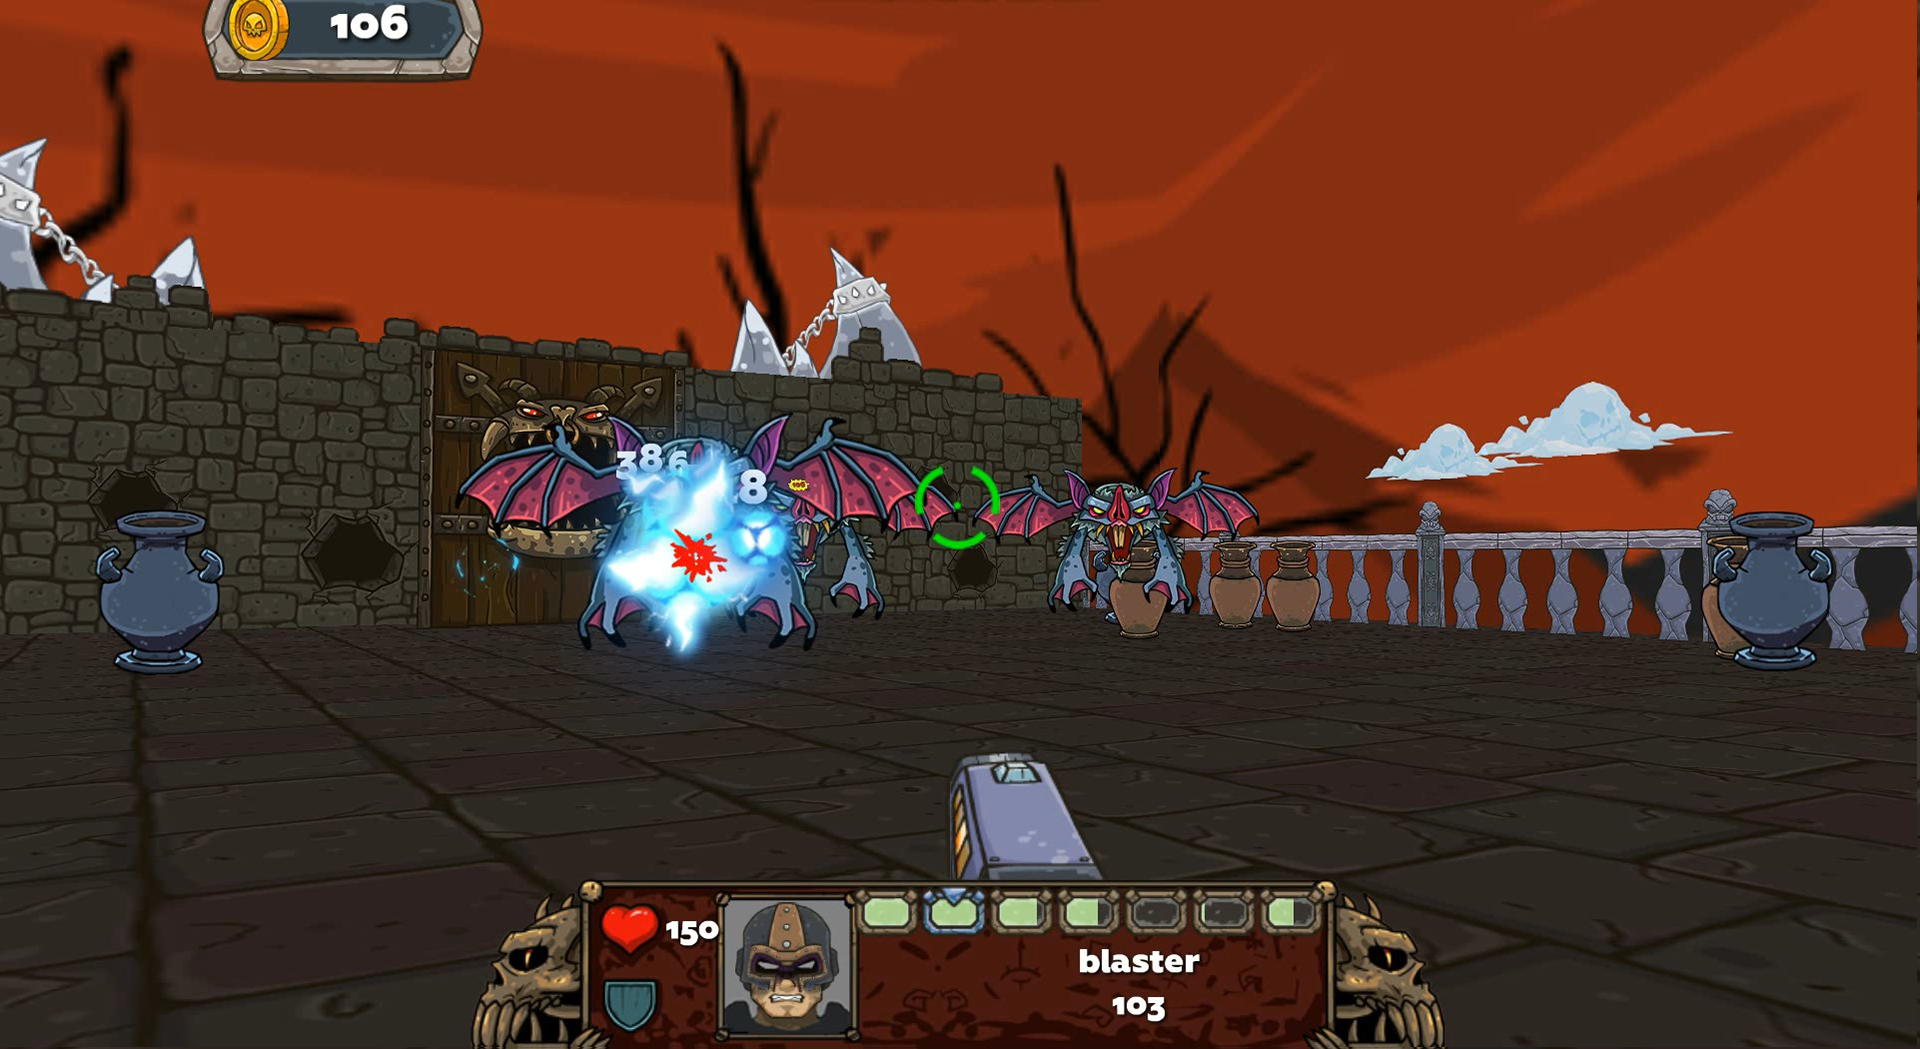 Demon Blast - 2.5d game offlinのキャプチャ